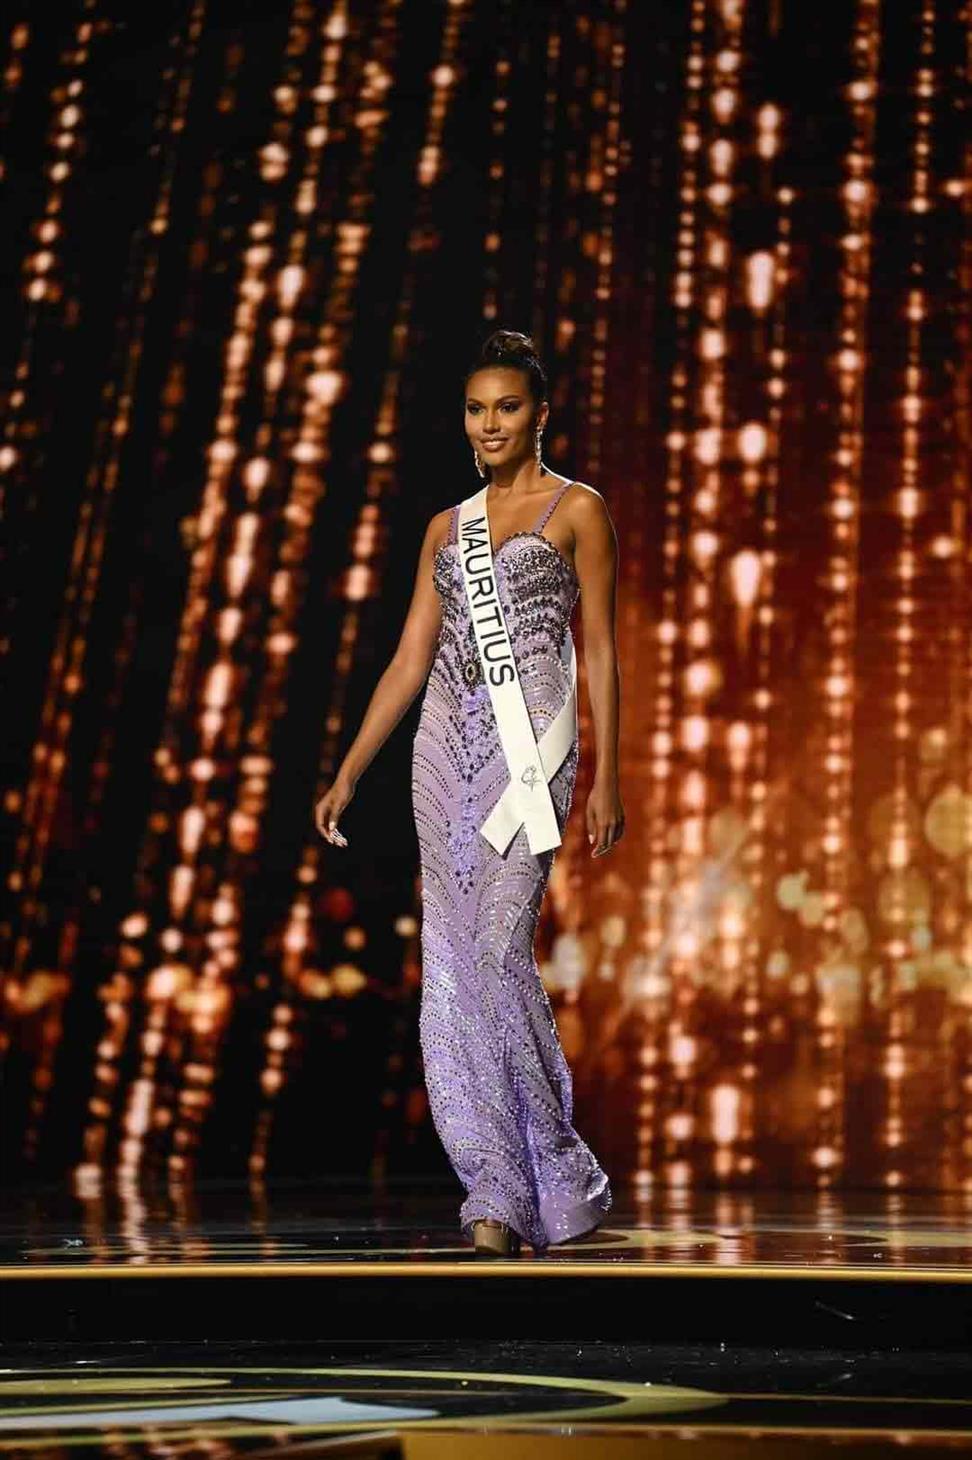 Alexandrine Belle-Étoile representing Mauritius